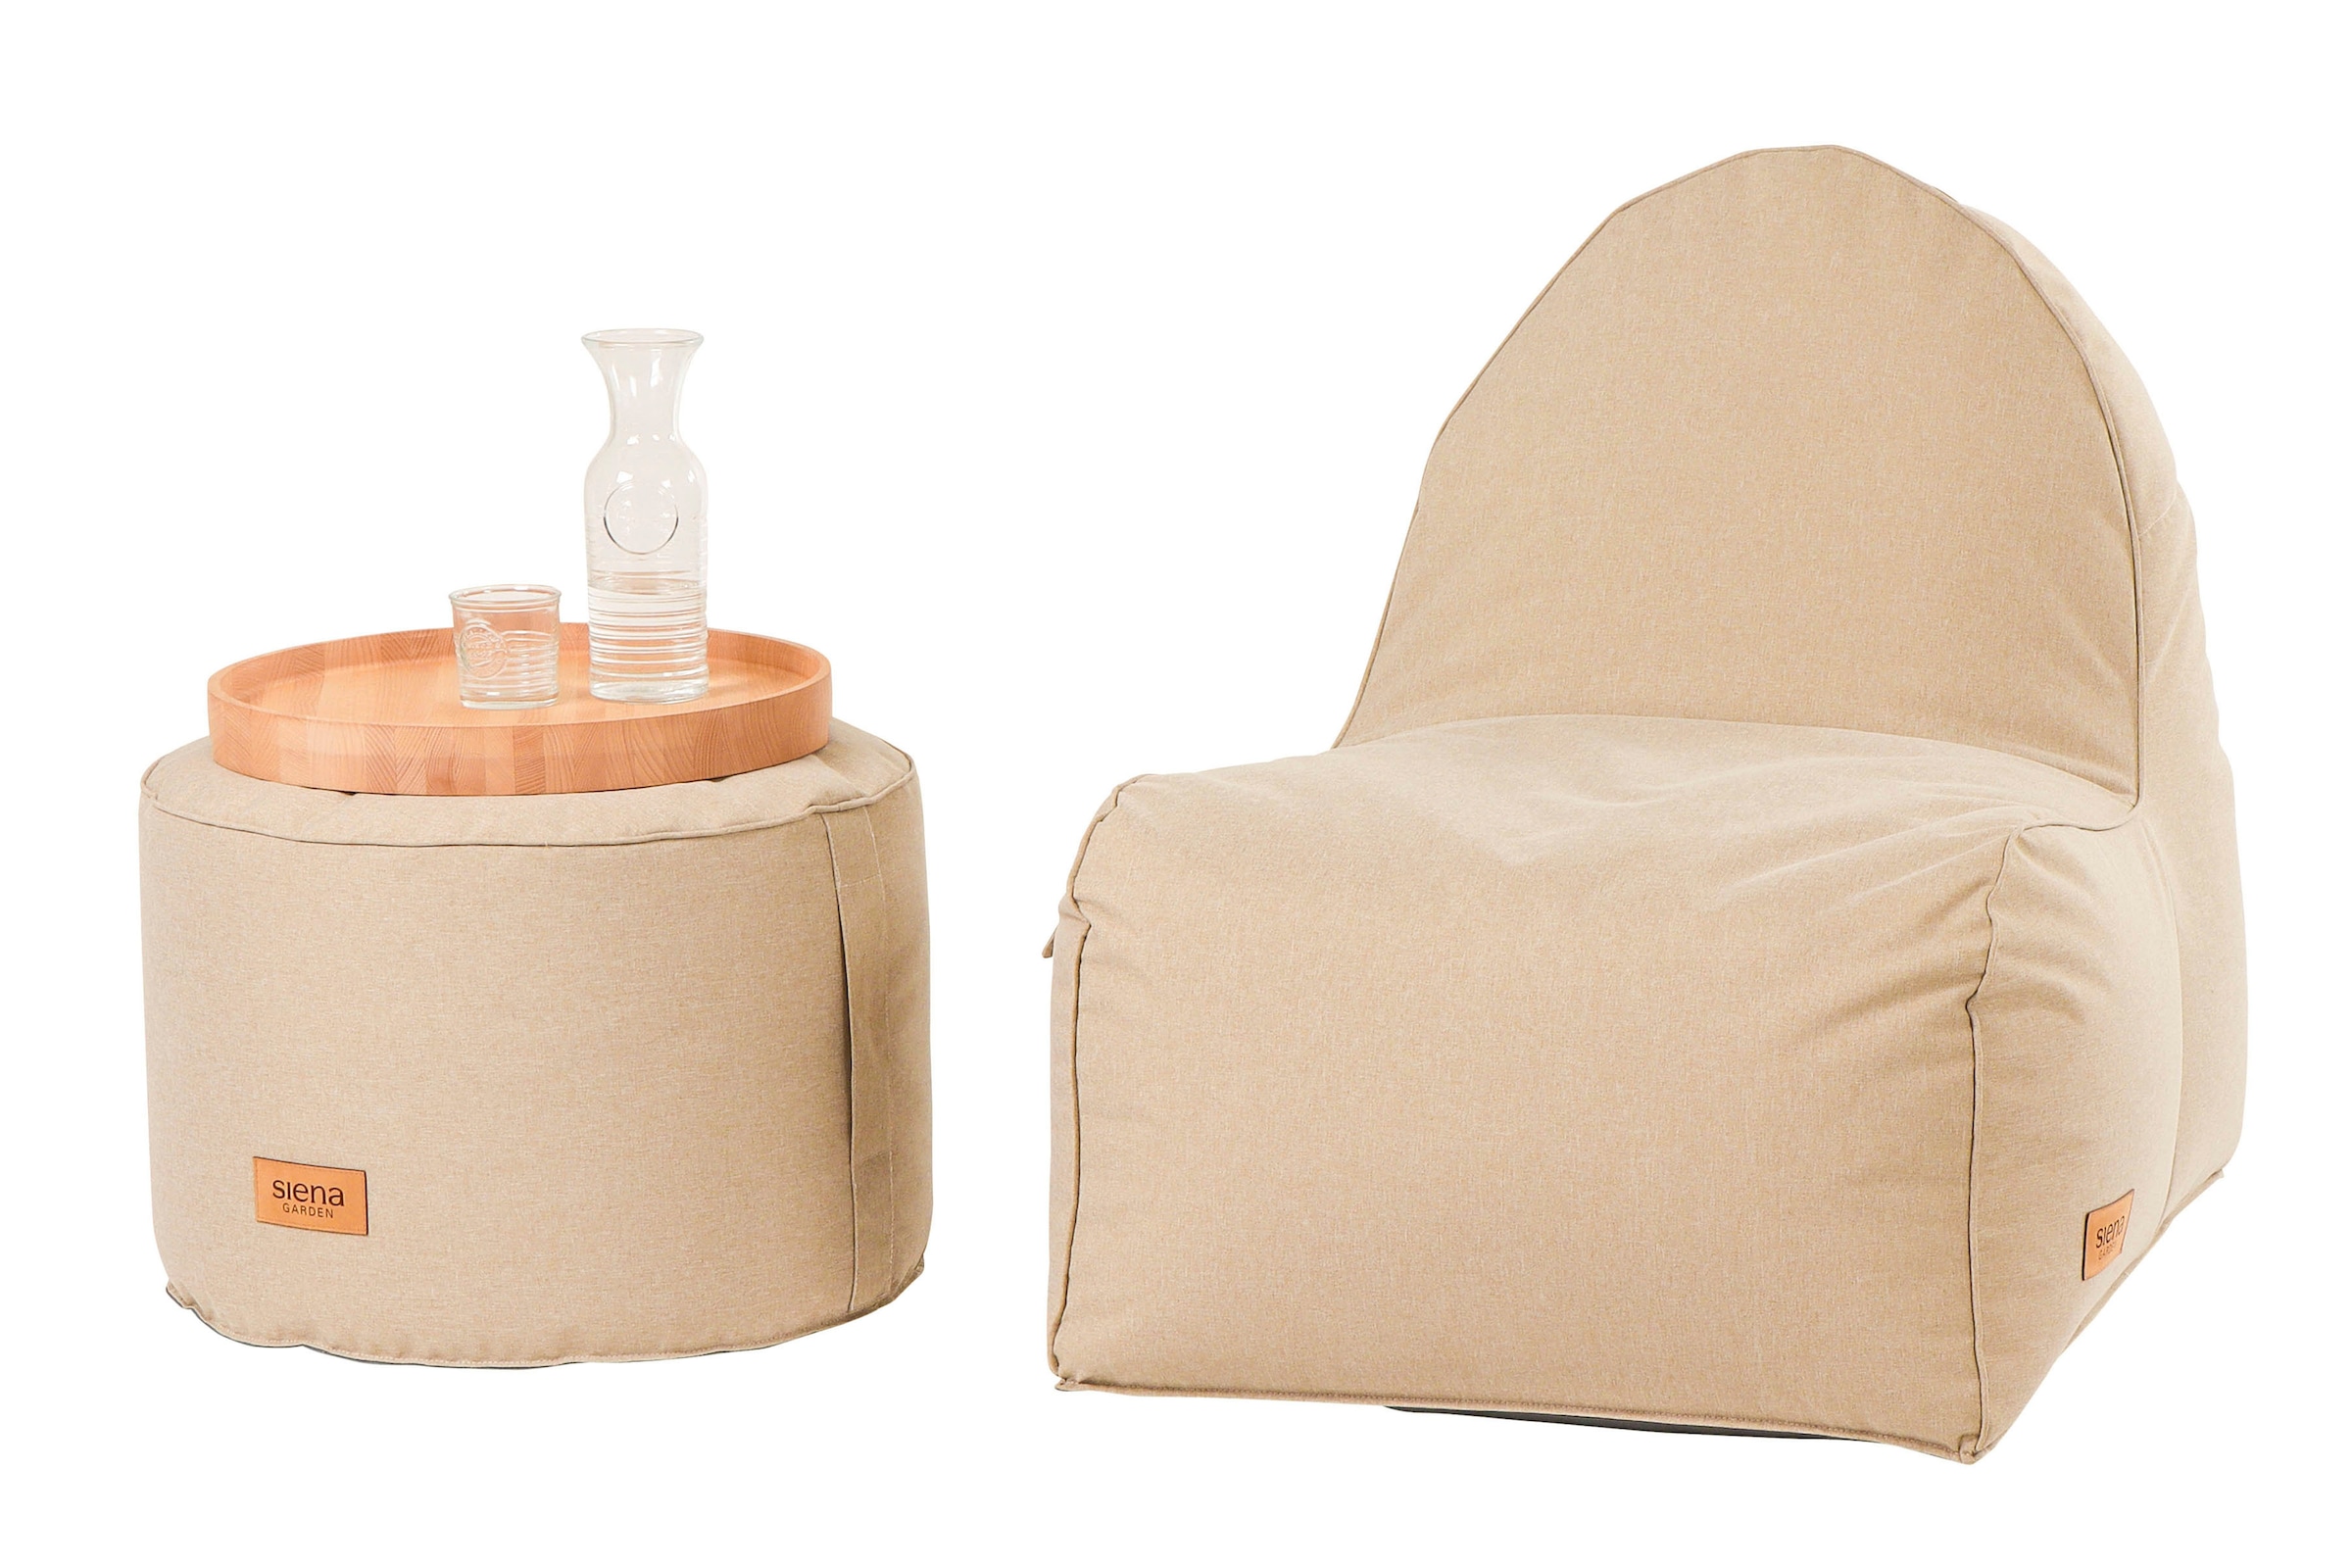 Siena Garden Sitzsack »FLOW.U Round Ø60cm*H40cm«, Indoor & Outdoor, in verschiedenen Farben erhältlich